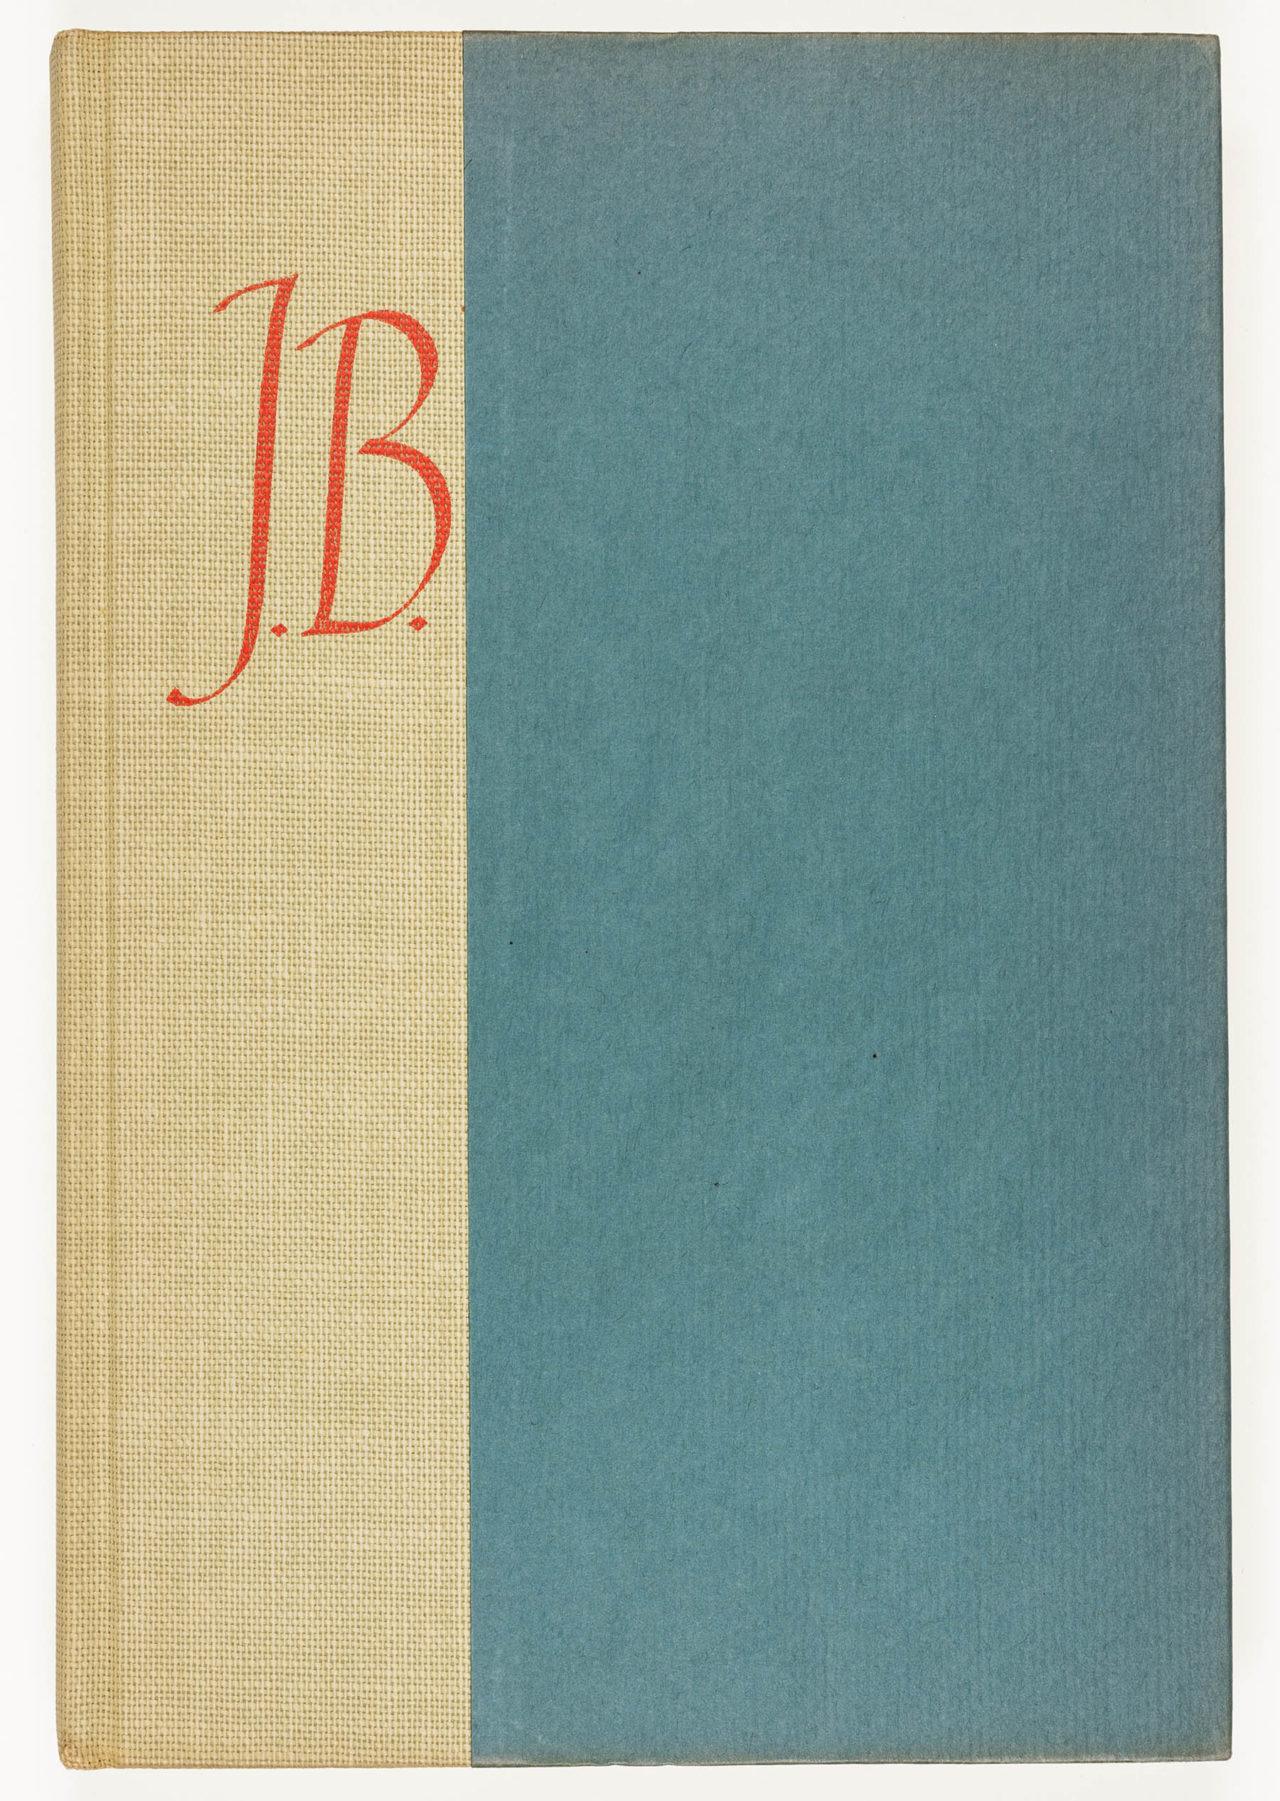 J.B. binding